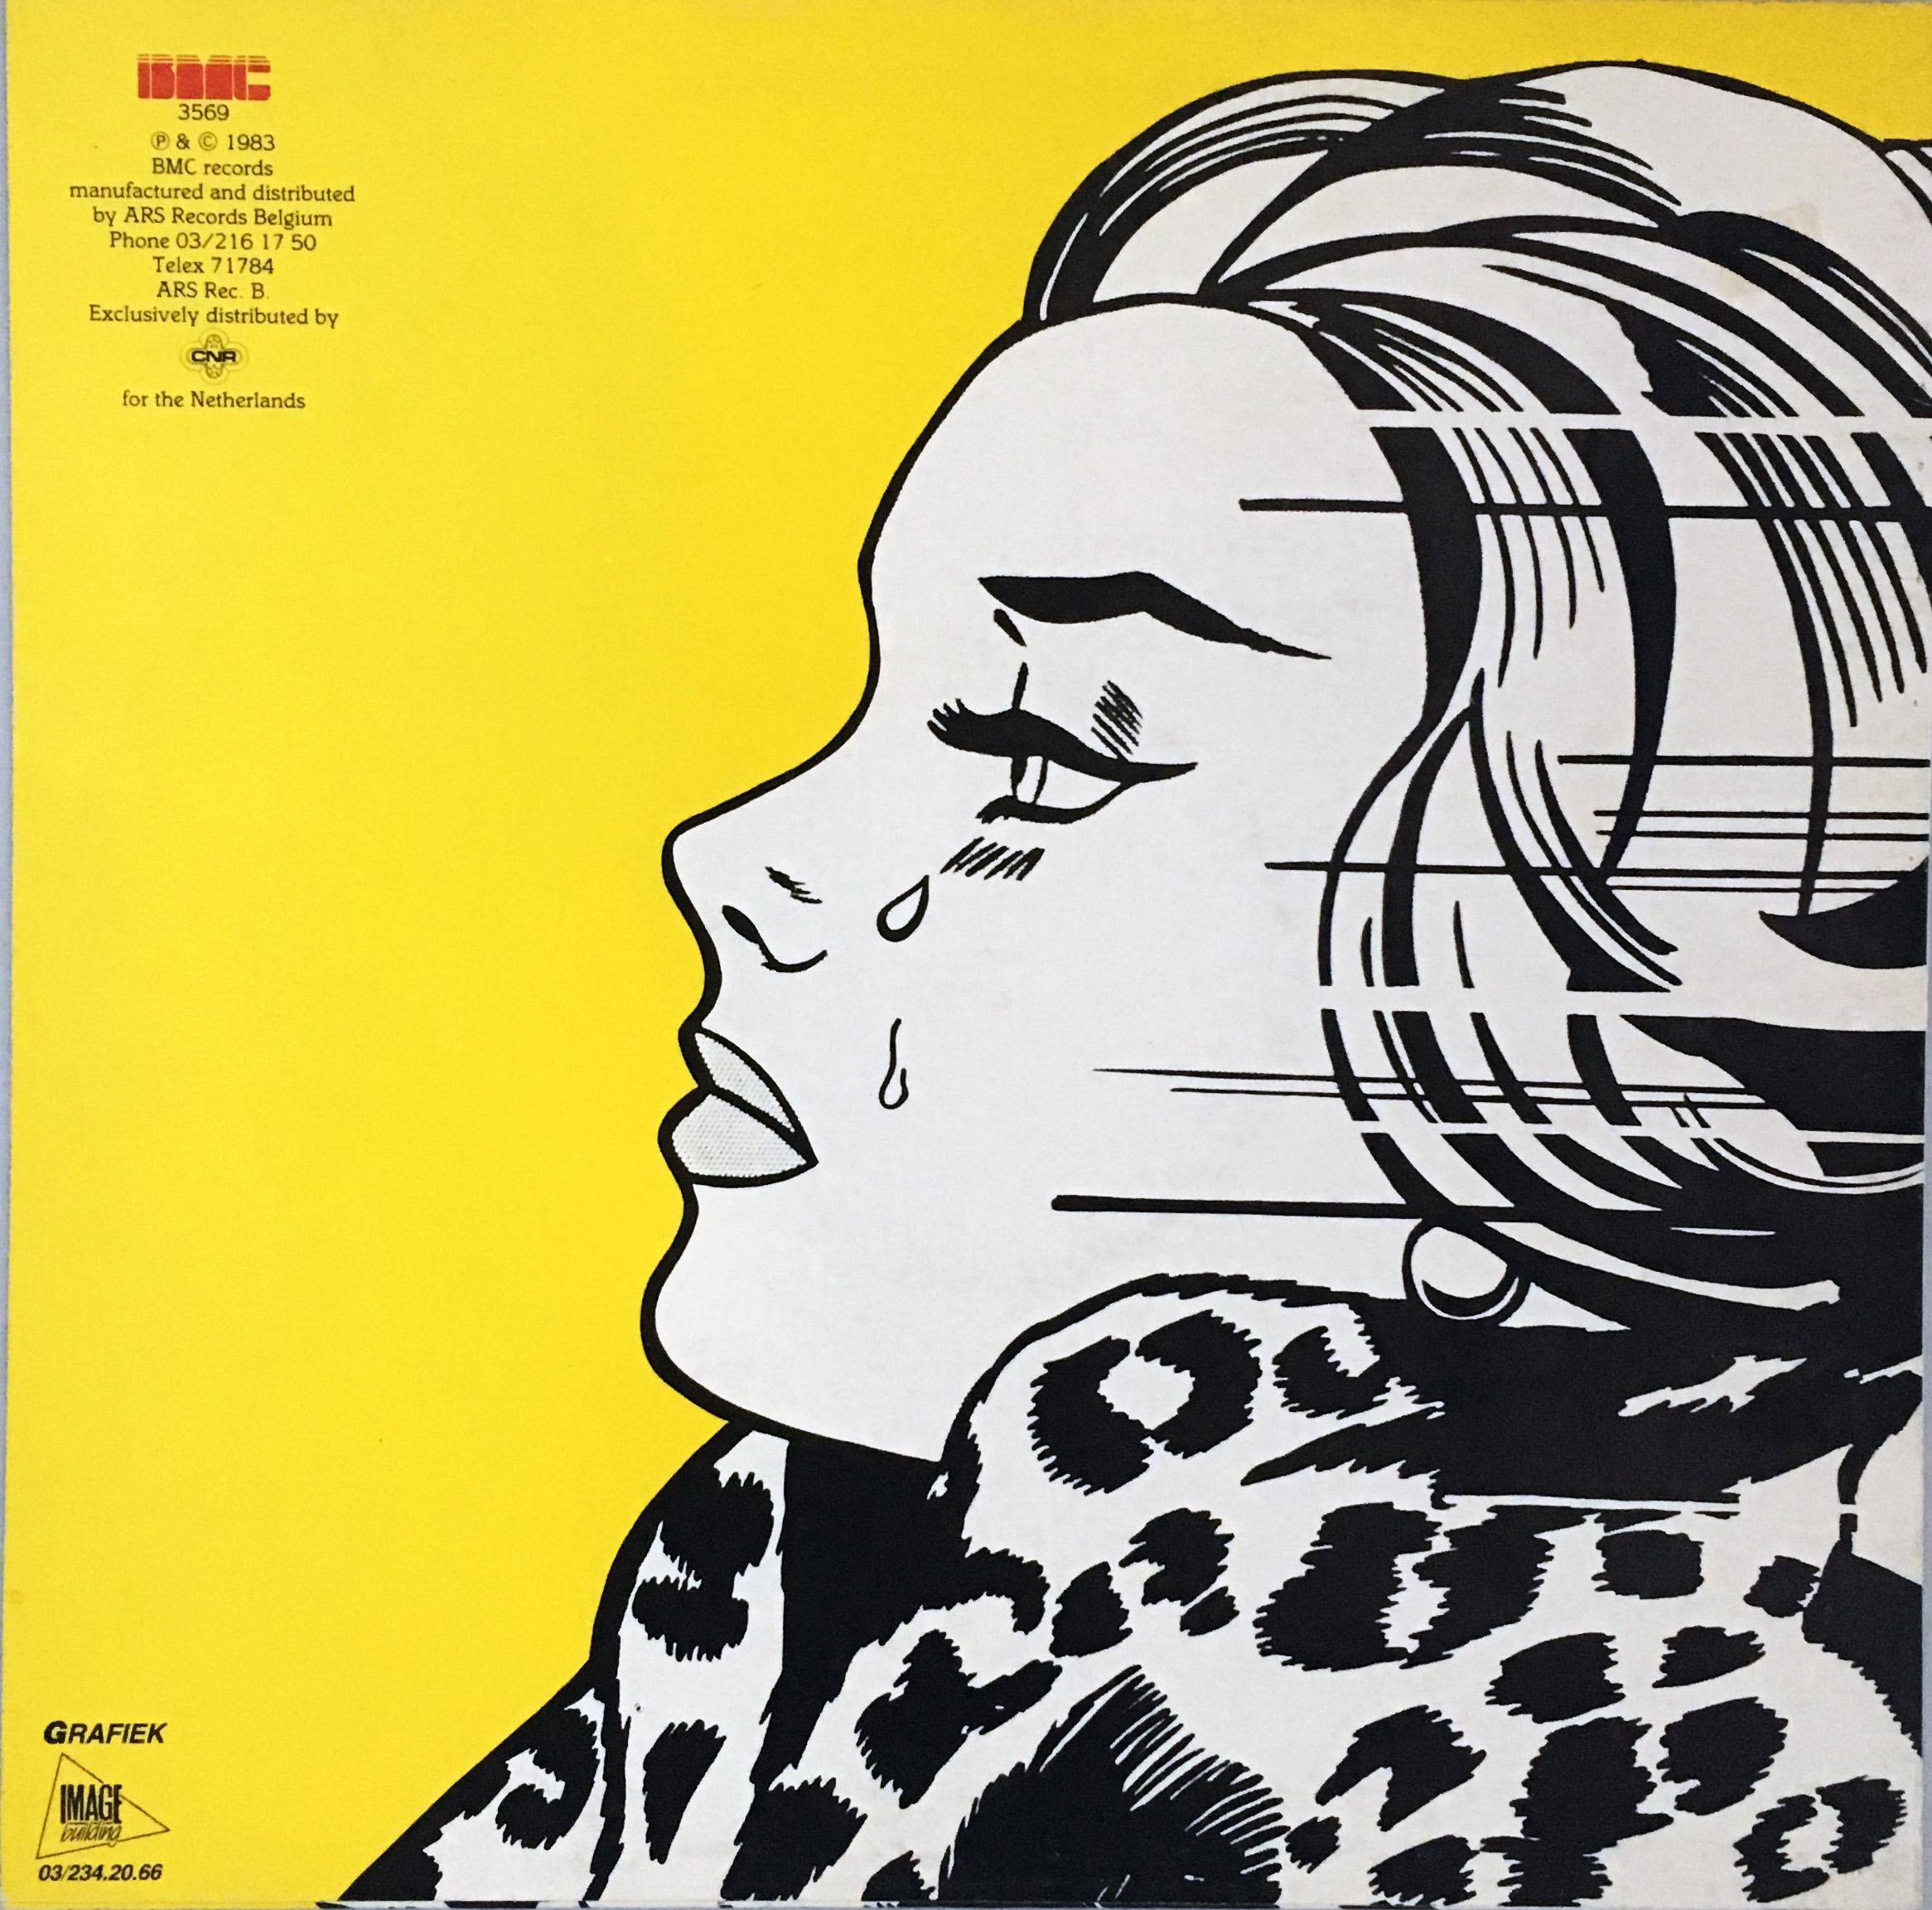 Rare original Roy Lichtenstein vinyl record art - Pop Art Art by (after) Roy Lichtenstein